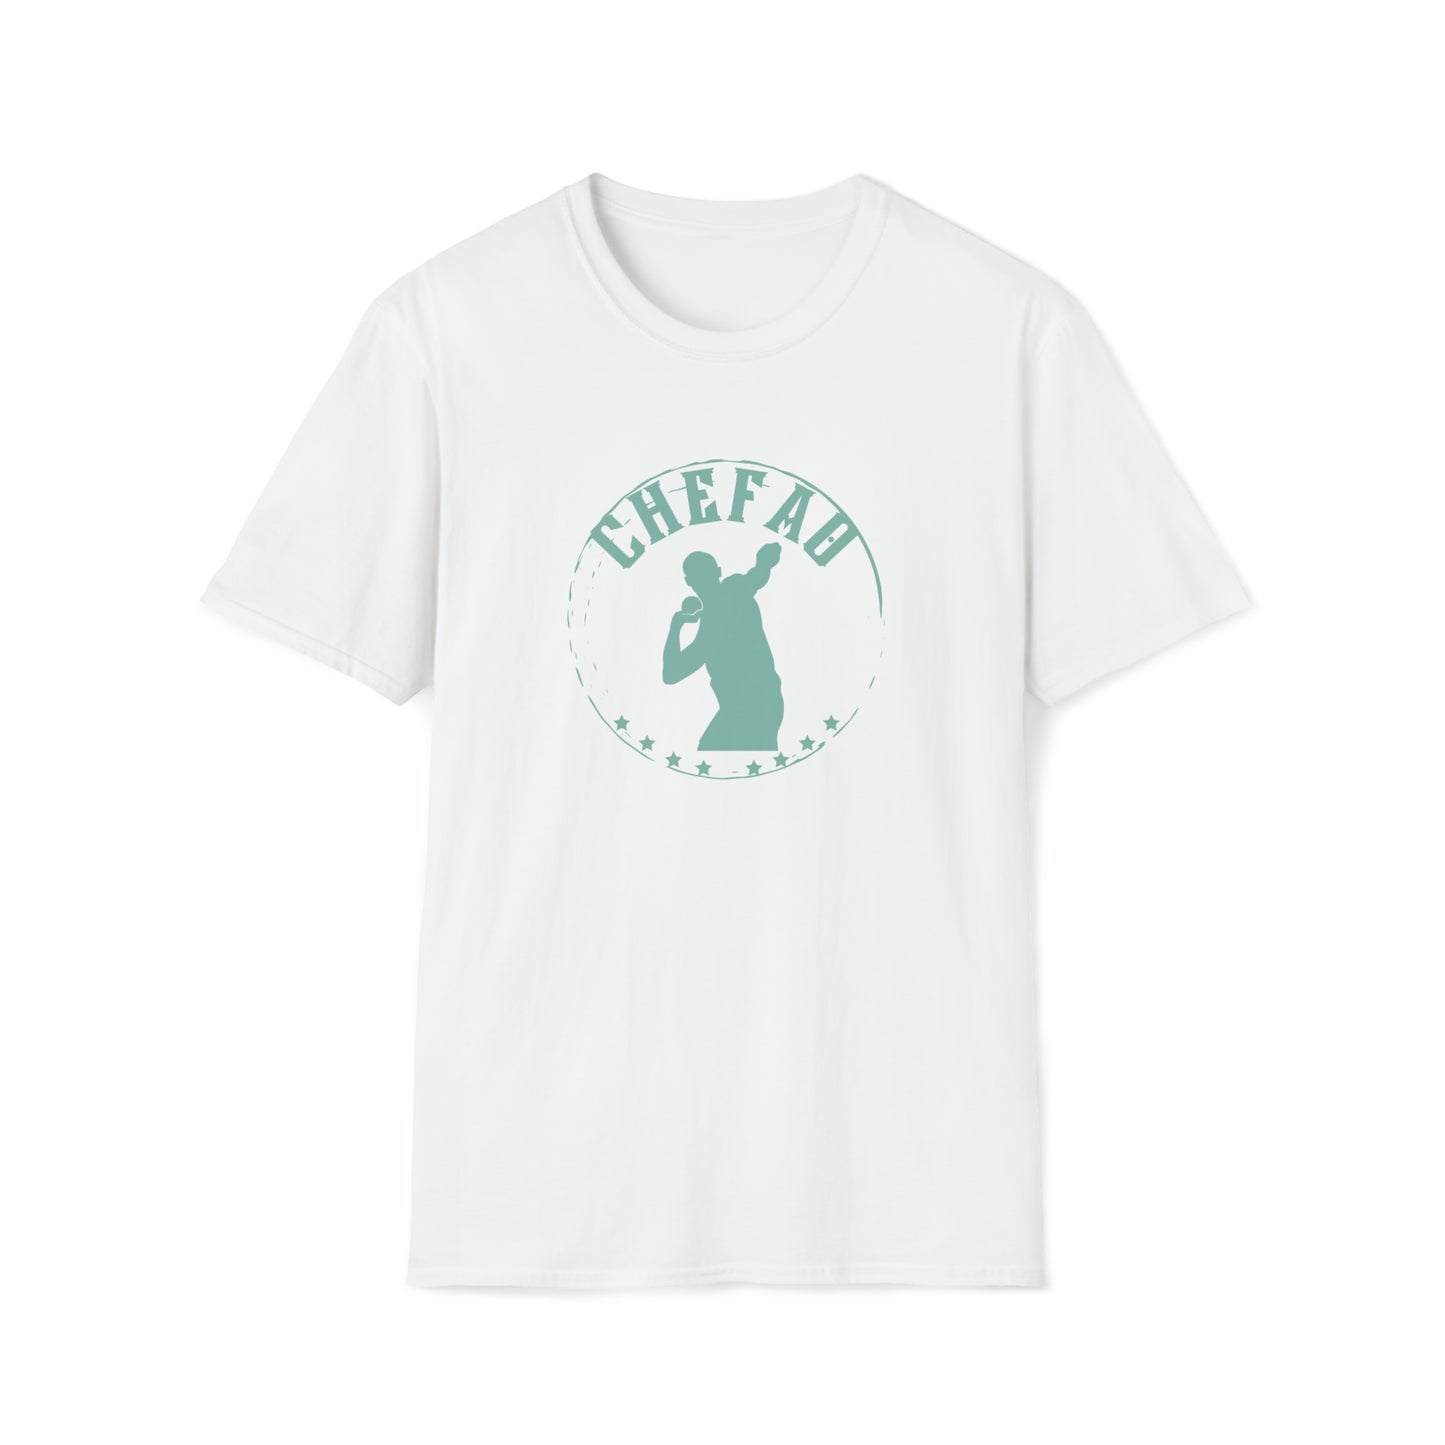 Chefao Shot Put I, Unisex Softstyle T-Shirt